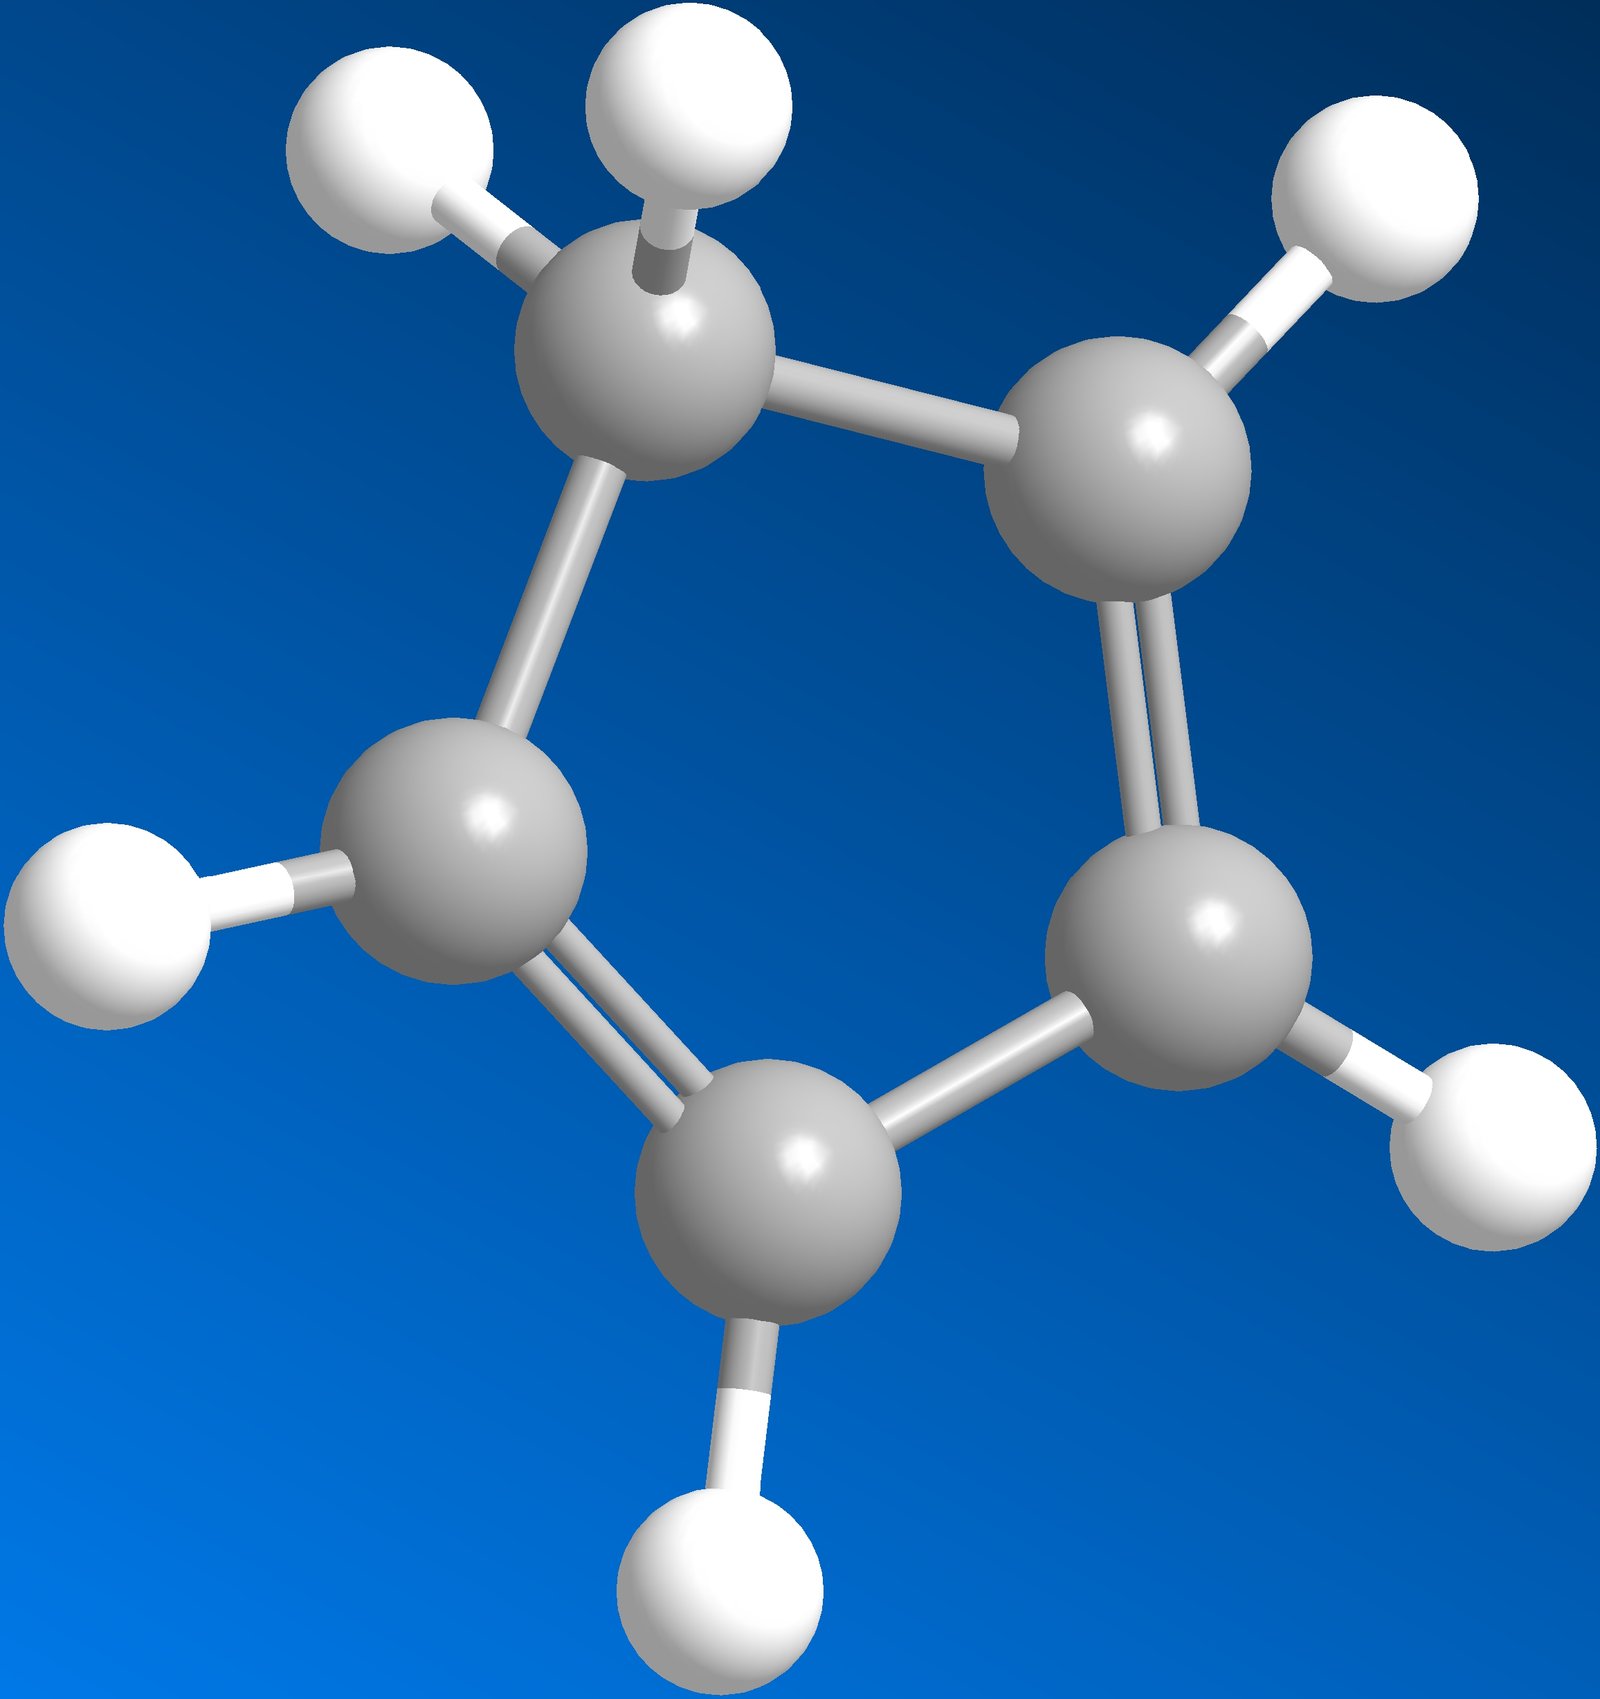 بنتادايين الحلقي (حلقي البنتاديين) Cyclopentadiene